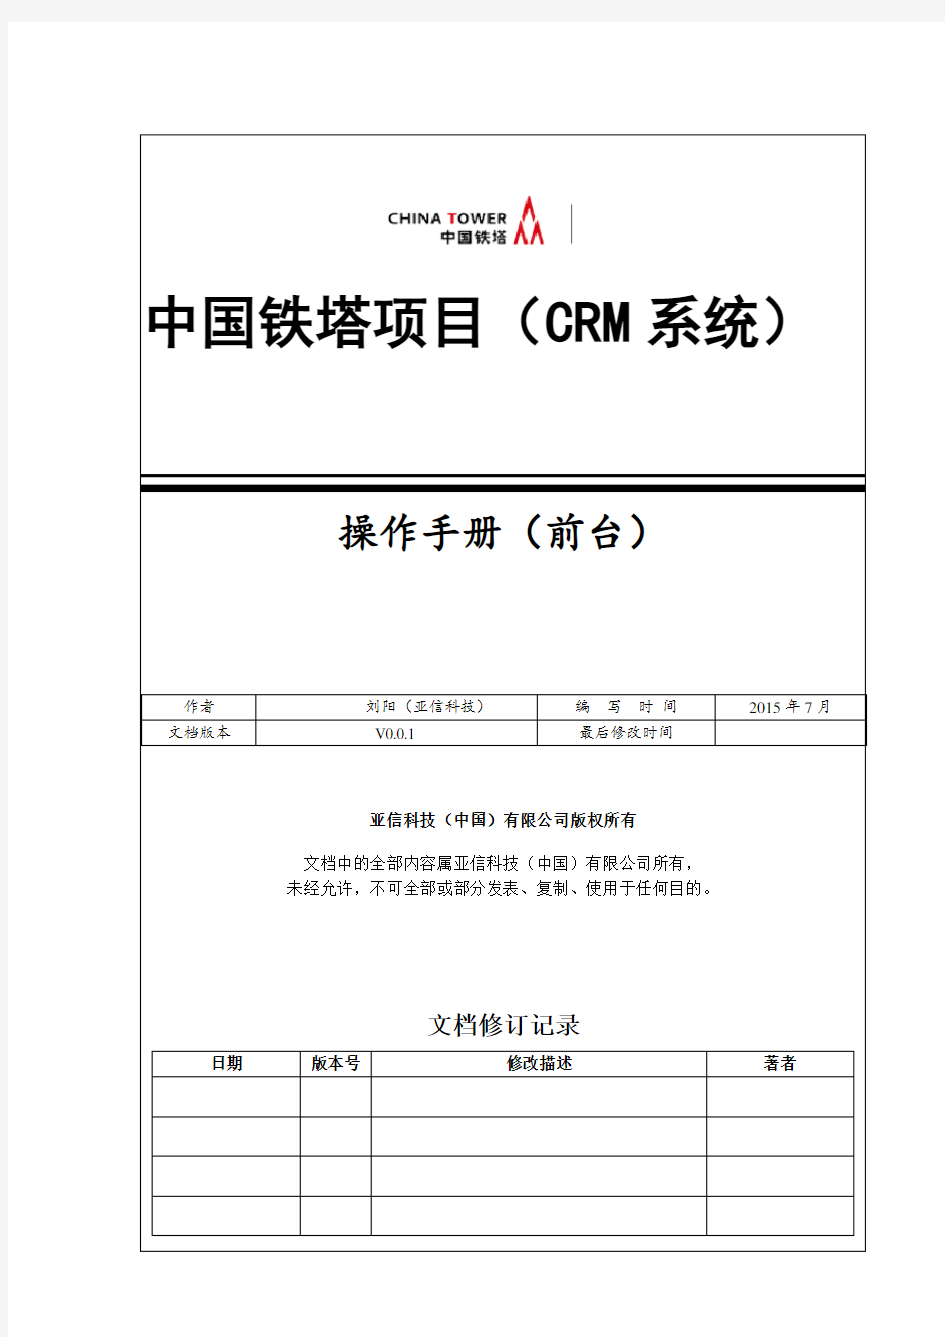 中国铁塔项目(CRM系统)操作手册(前台)